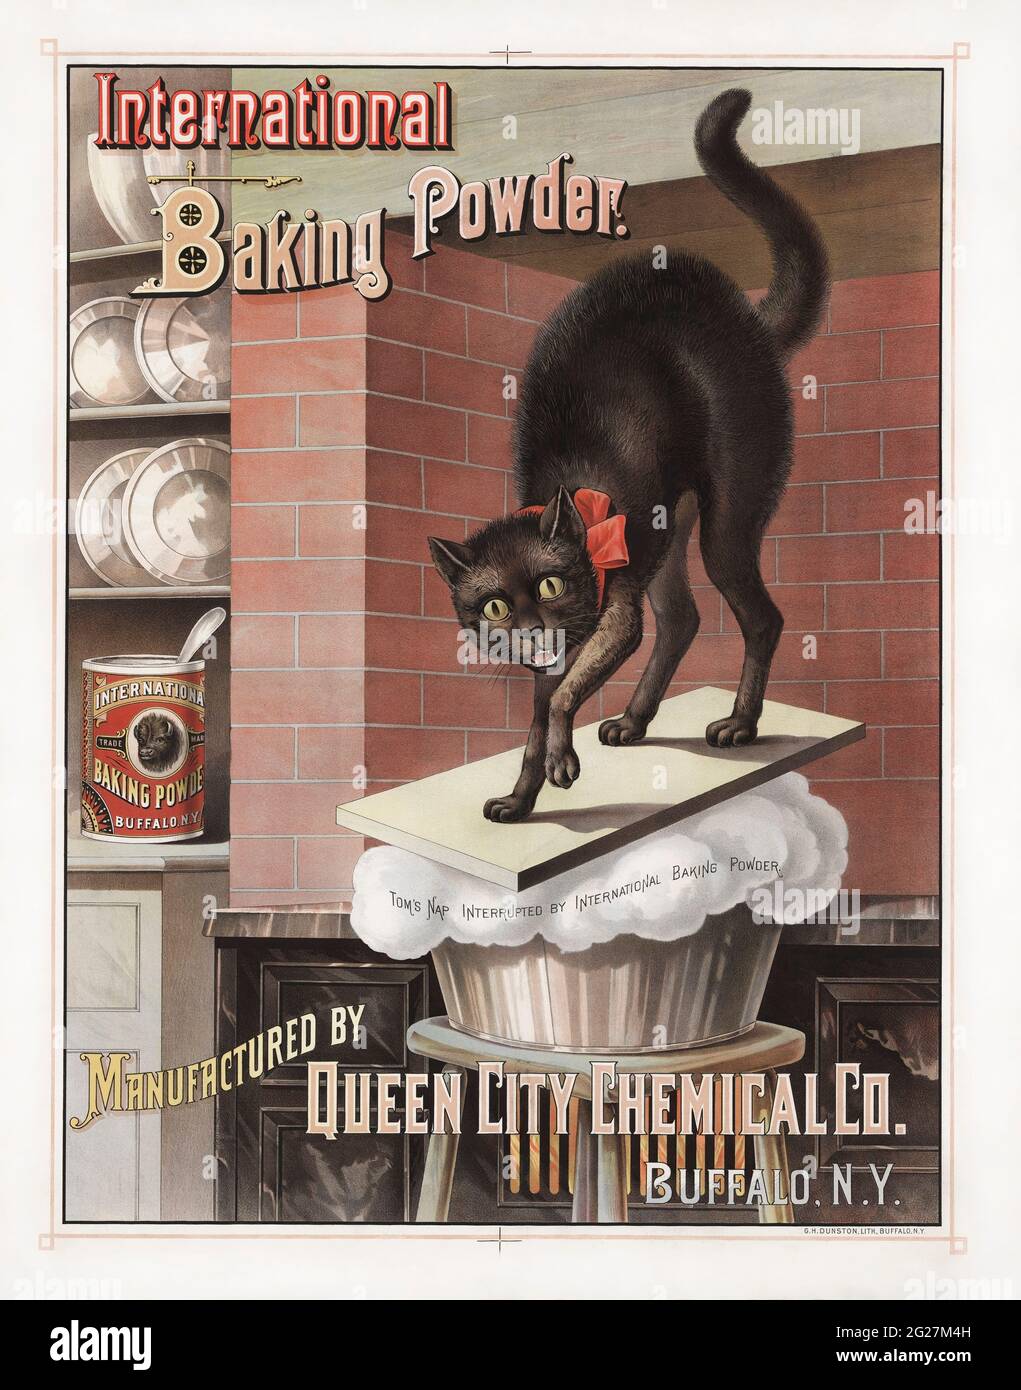 Pubblicità per il marchio internazionale lievito in polvere, mostrando un gatto risvegliato da pane aumento. Foto Stock